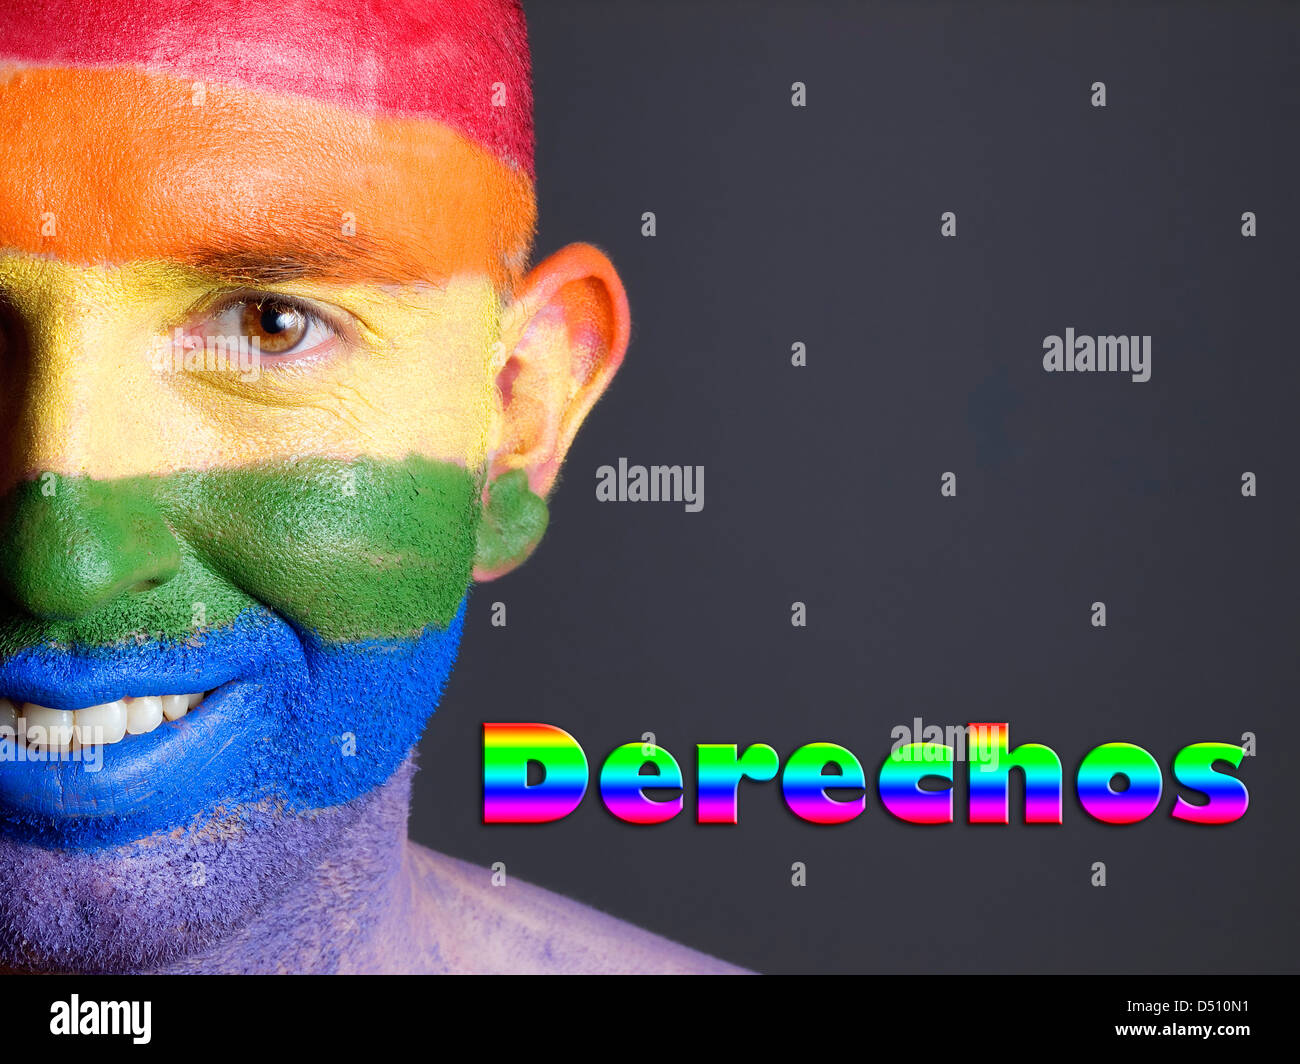 Hombre con la bandera gay pintada en la cara y sonriendo. La palabra 'derechos' esta escrita en un lado. Foto de stock